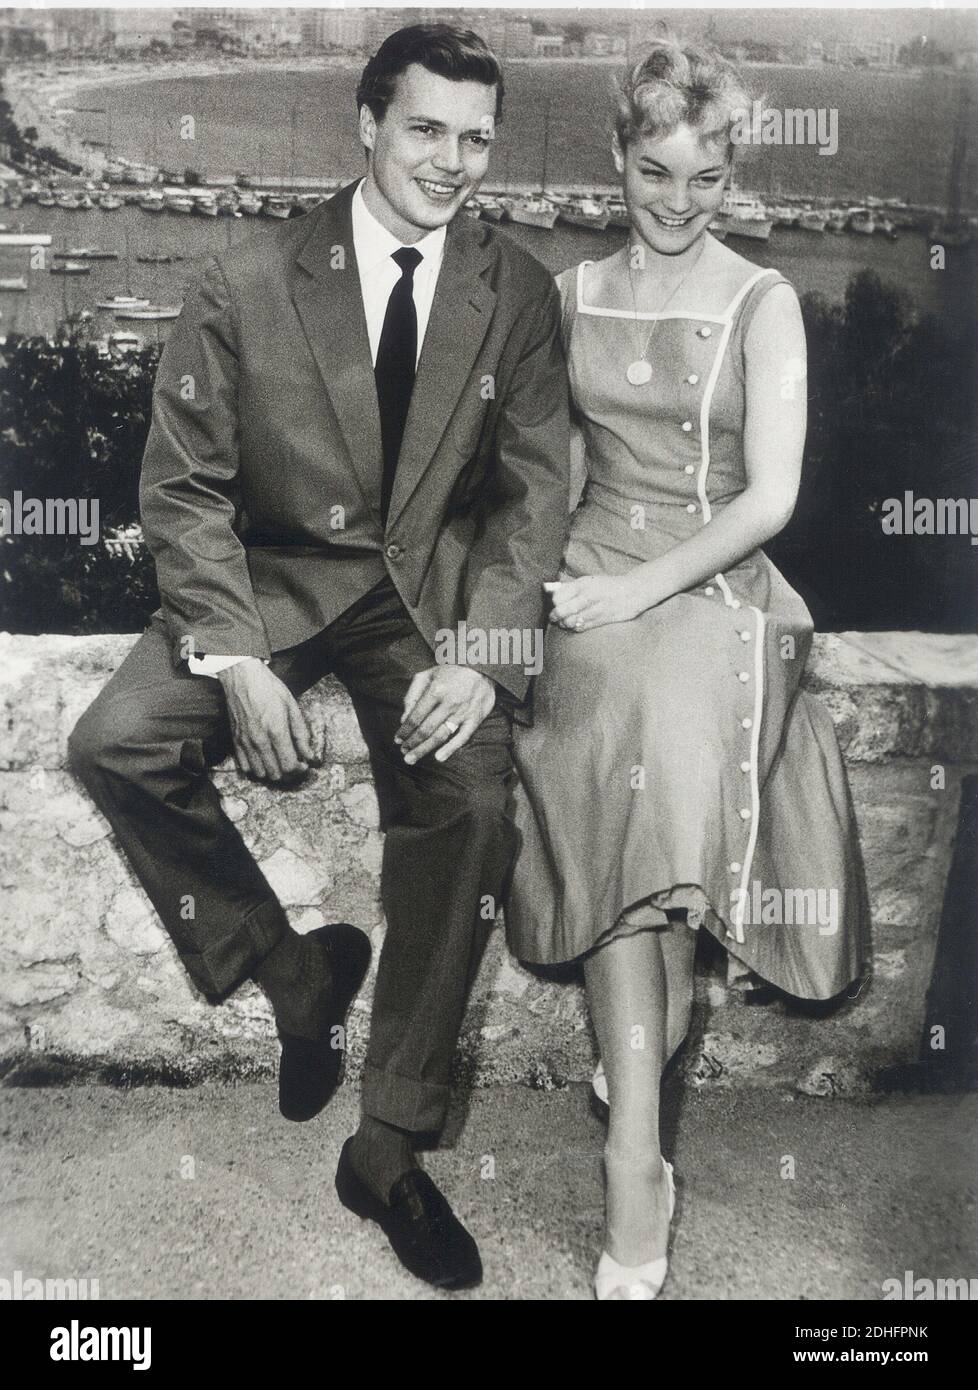 1955 , Cannes , FRANCIA : l'attrice del film ROMY SCHNEIDER ( 1938 - 1982 ) come la regina della fame e imperatrice SISSI Elisabeth Absburg d'Austria in ' Sissi ' di Ernst Marischka , con l'attore KARL HEINZ BOHM ( come il Kaiser Franz Josef nel film ) A Cannes per il Festival du Cinema - ATTRICE - FILM - CINEMA - ASBURGO - ABSBURGO - ritratto - ritratto - diamante - gioielli - gioielli - gioiello - gioielli - scollatura - scollatura - medaglie - collana - medaglia - sorriso - sorriso - cravatta - cravatta ---- Archivio GBB Foto Stock